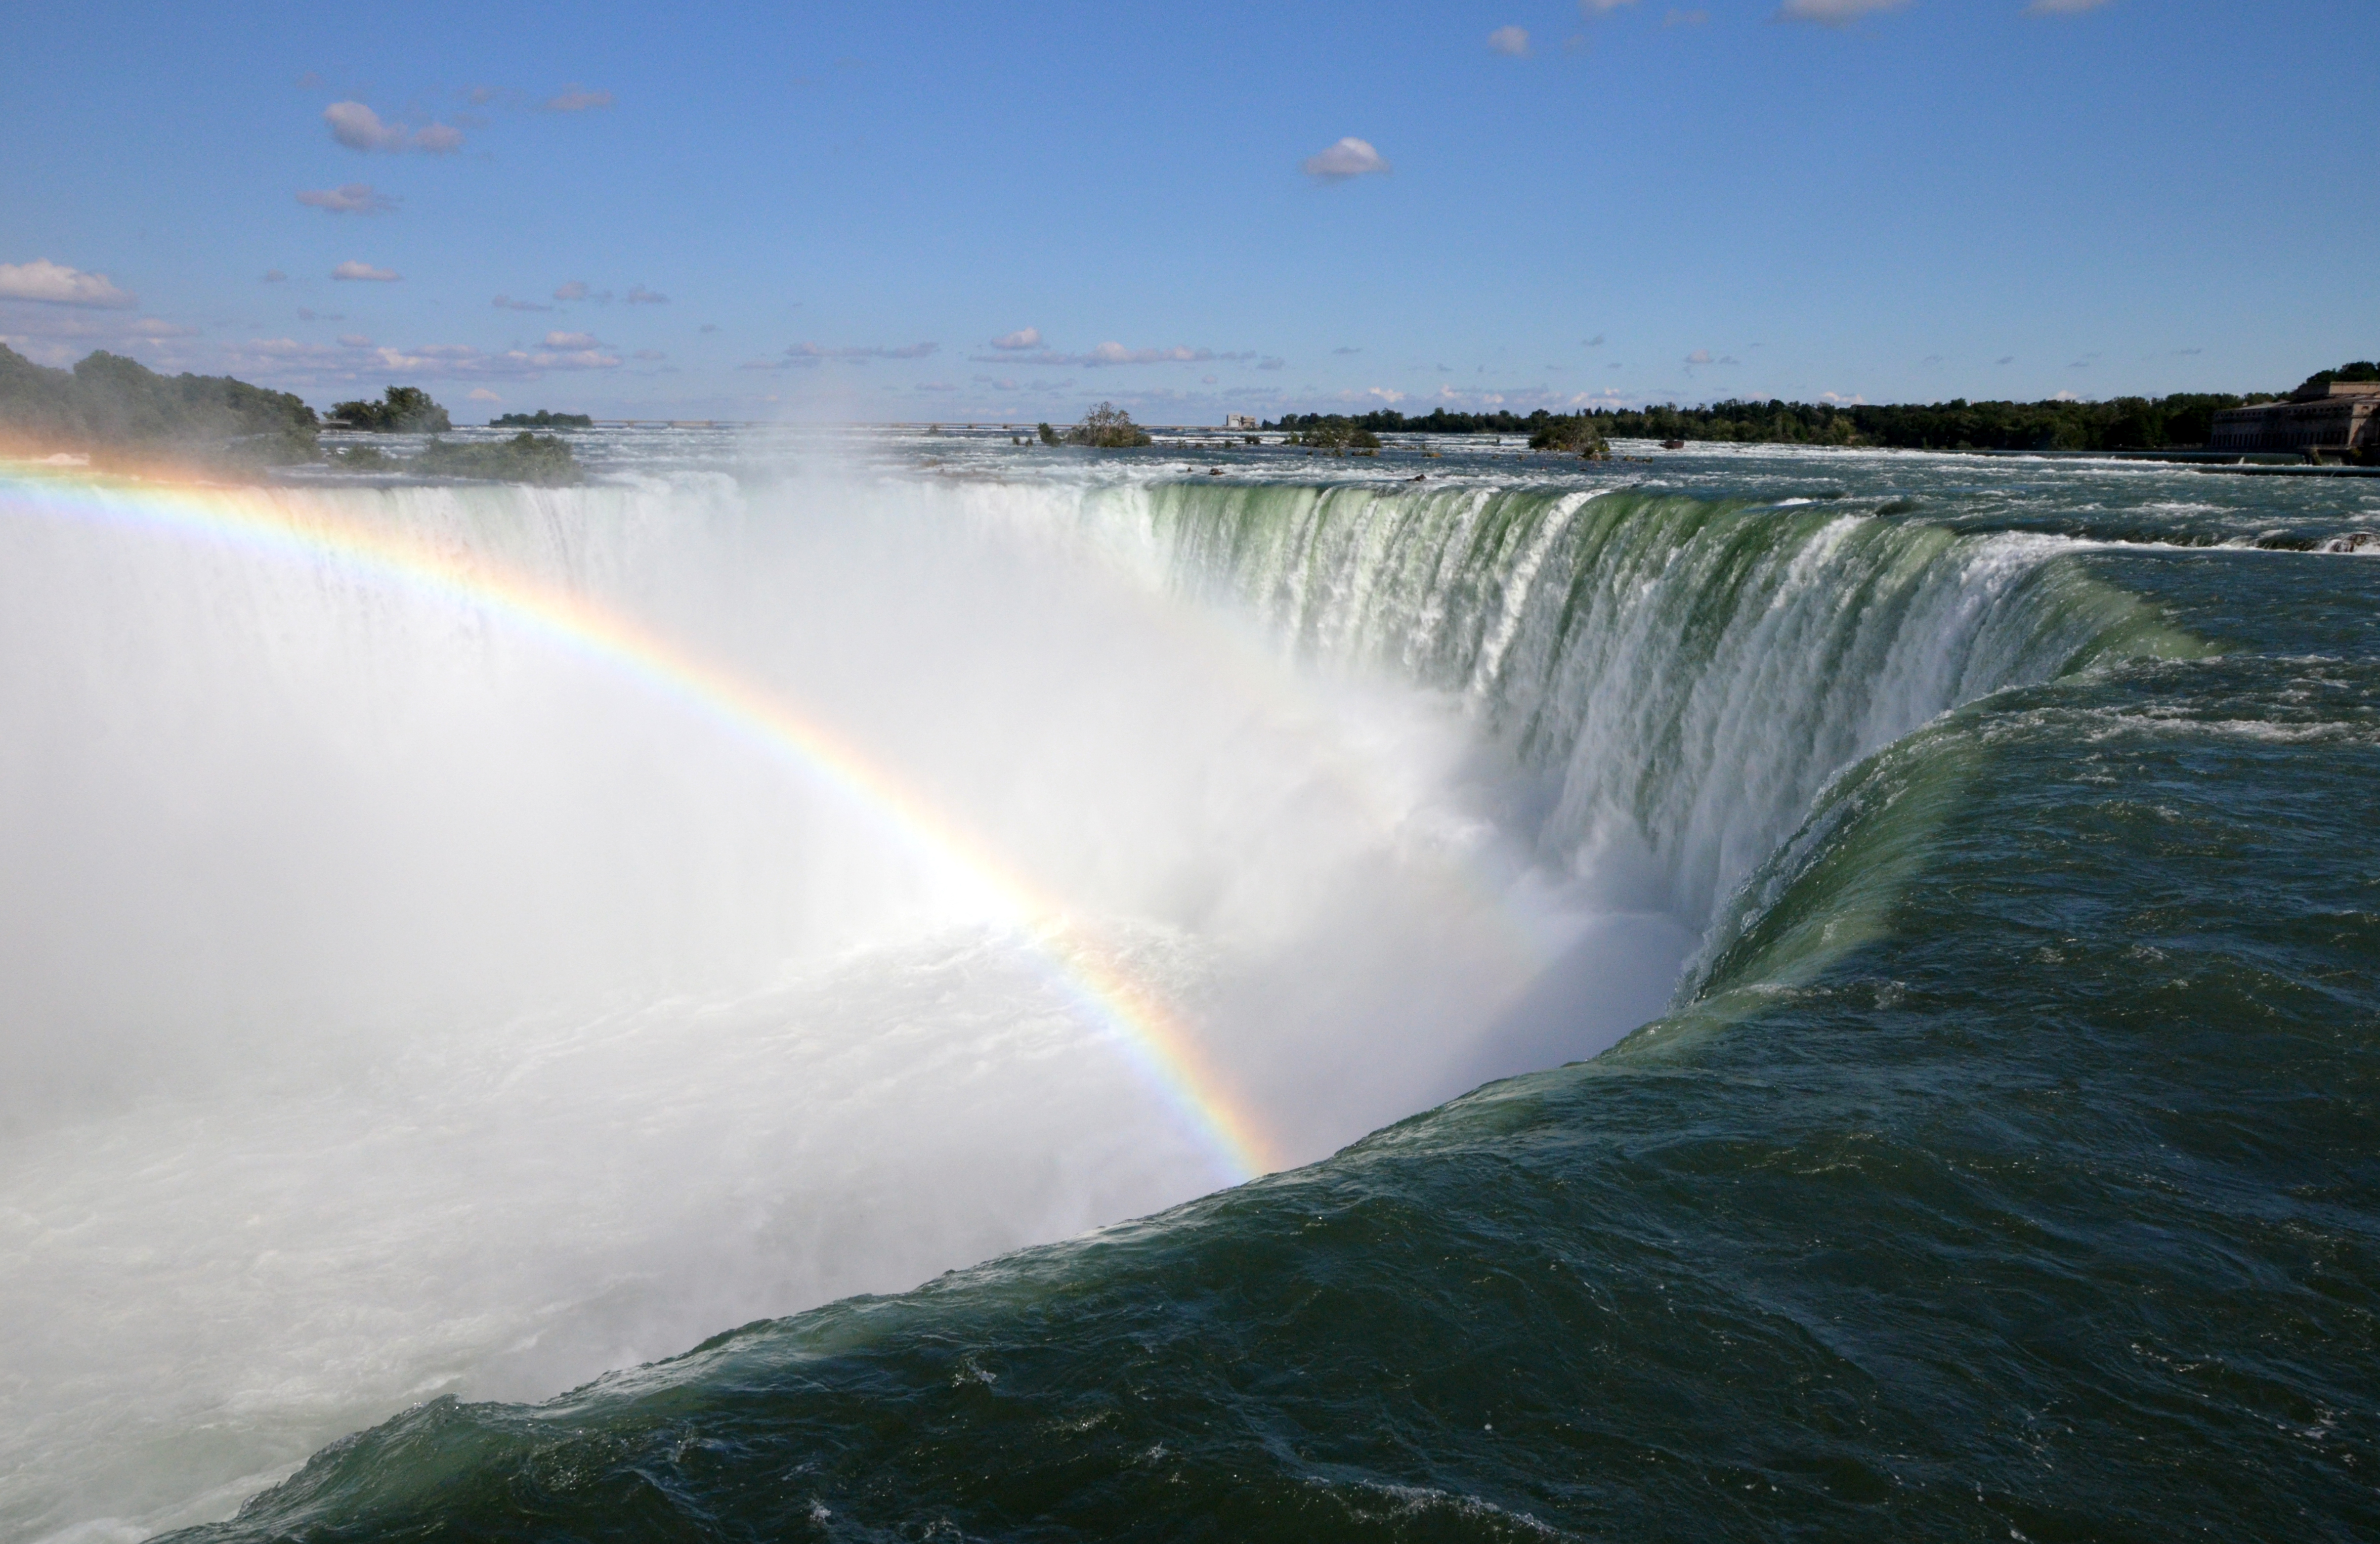 Horseshoe Falls - Niagara Falls